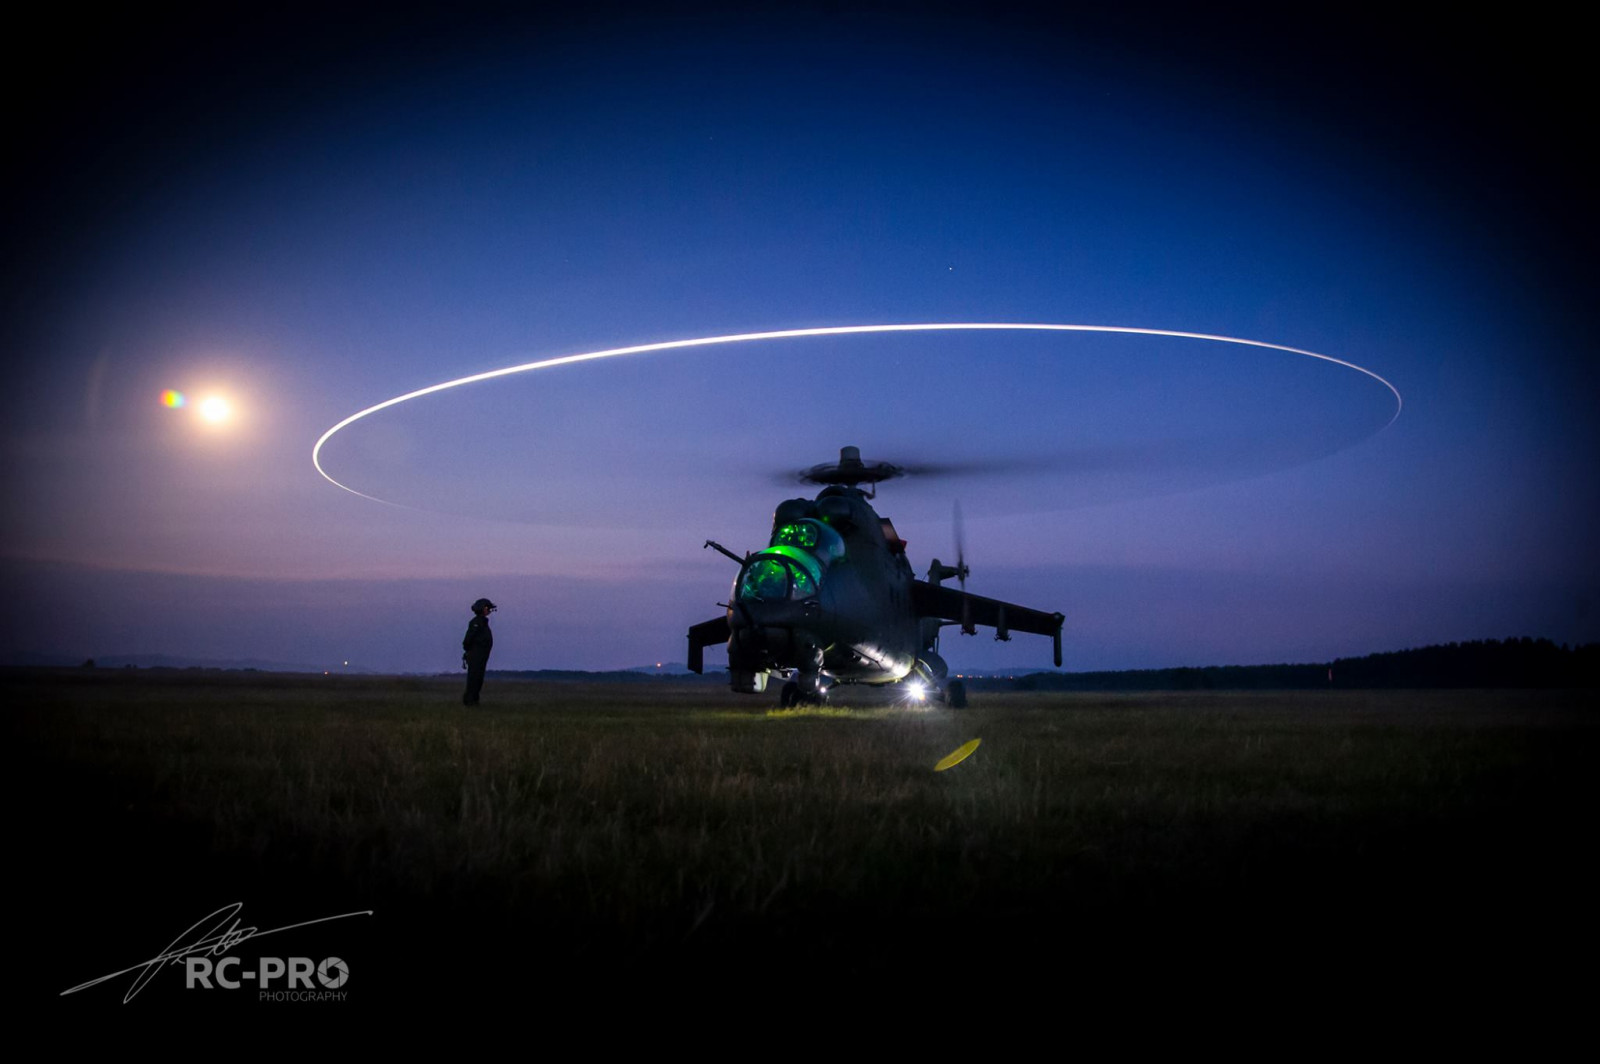 Hình ảnh của máy bay trực thăng